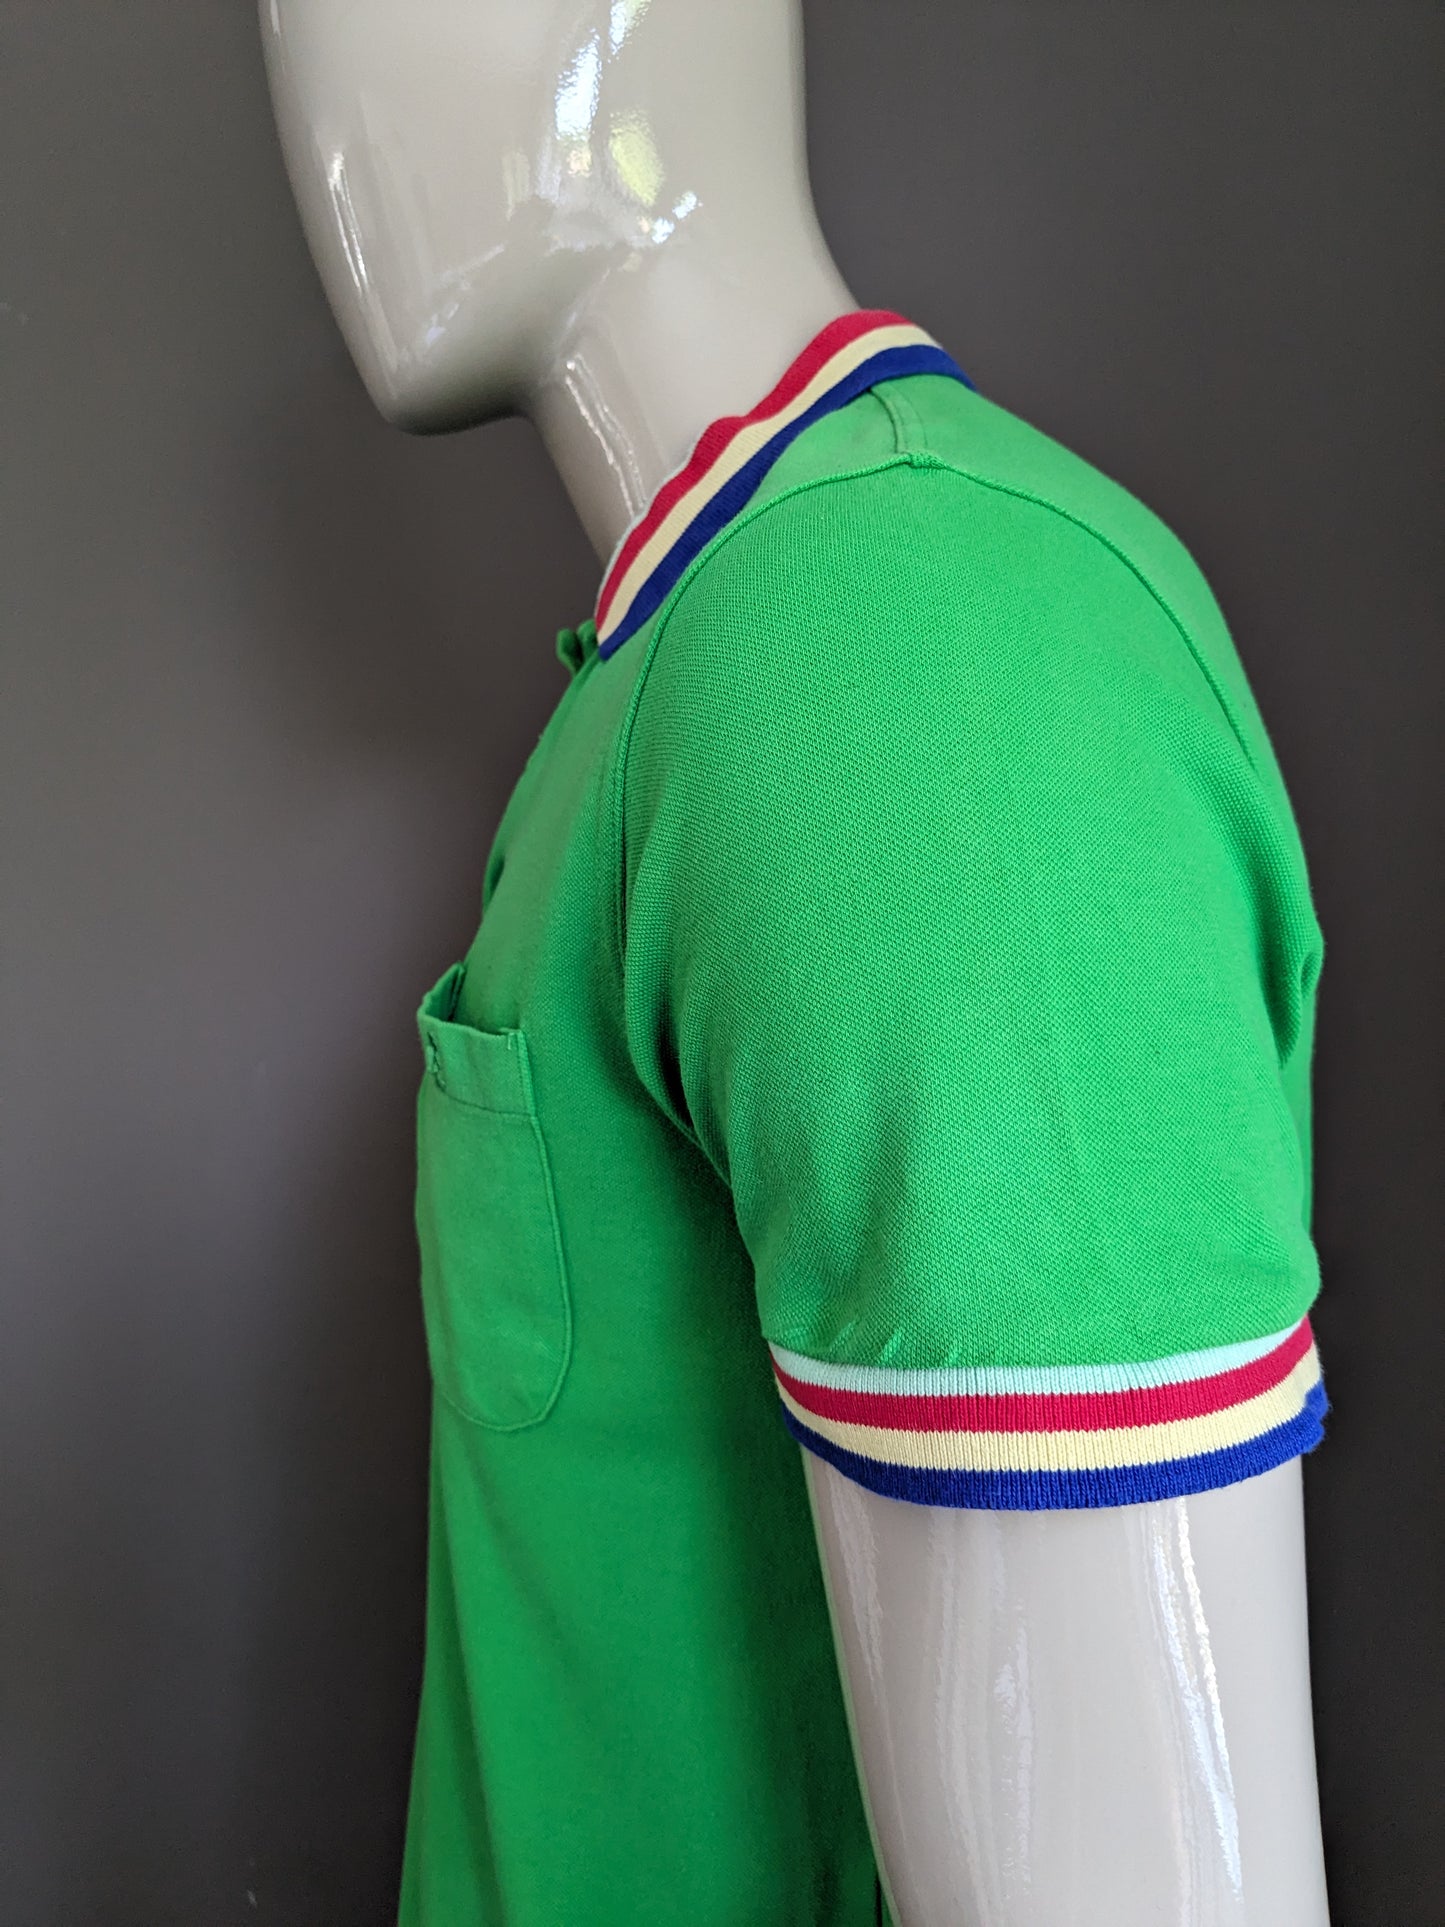 Polo Kangol vintage. Vert coloré, avec des accents rayés colorés. Taille L.